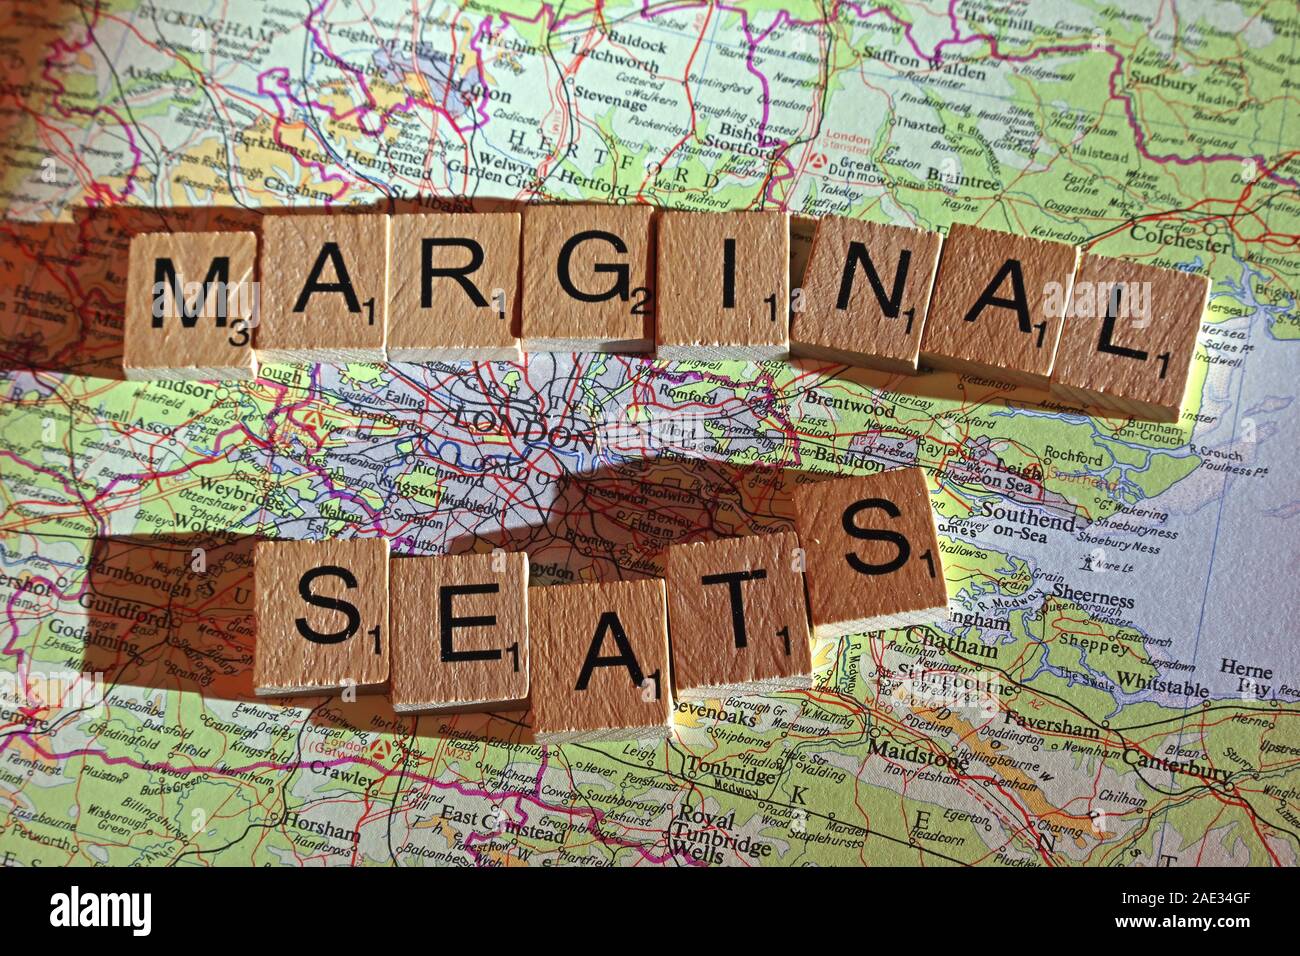 Sièges marginal l'épeautre au Scrabble lettres sur une carte du Royaume-Uni - Générale, élections, partis politiques dirigeants,parties,demandes,des doutes, Banque D'Images